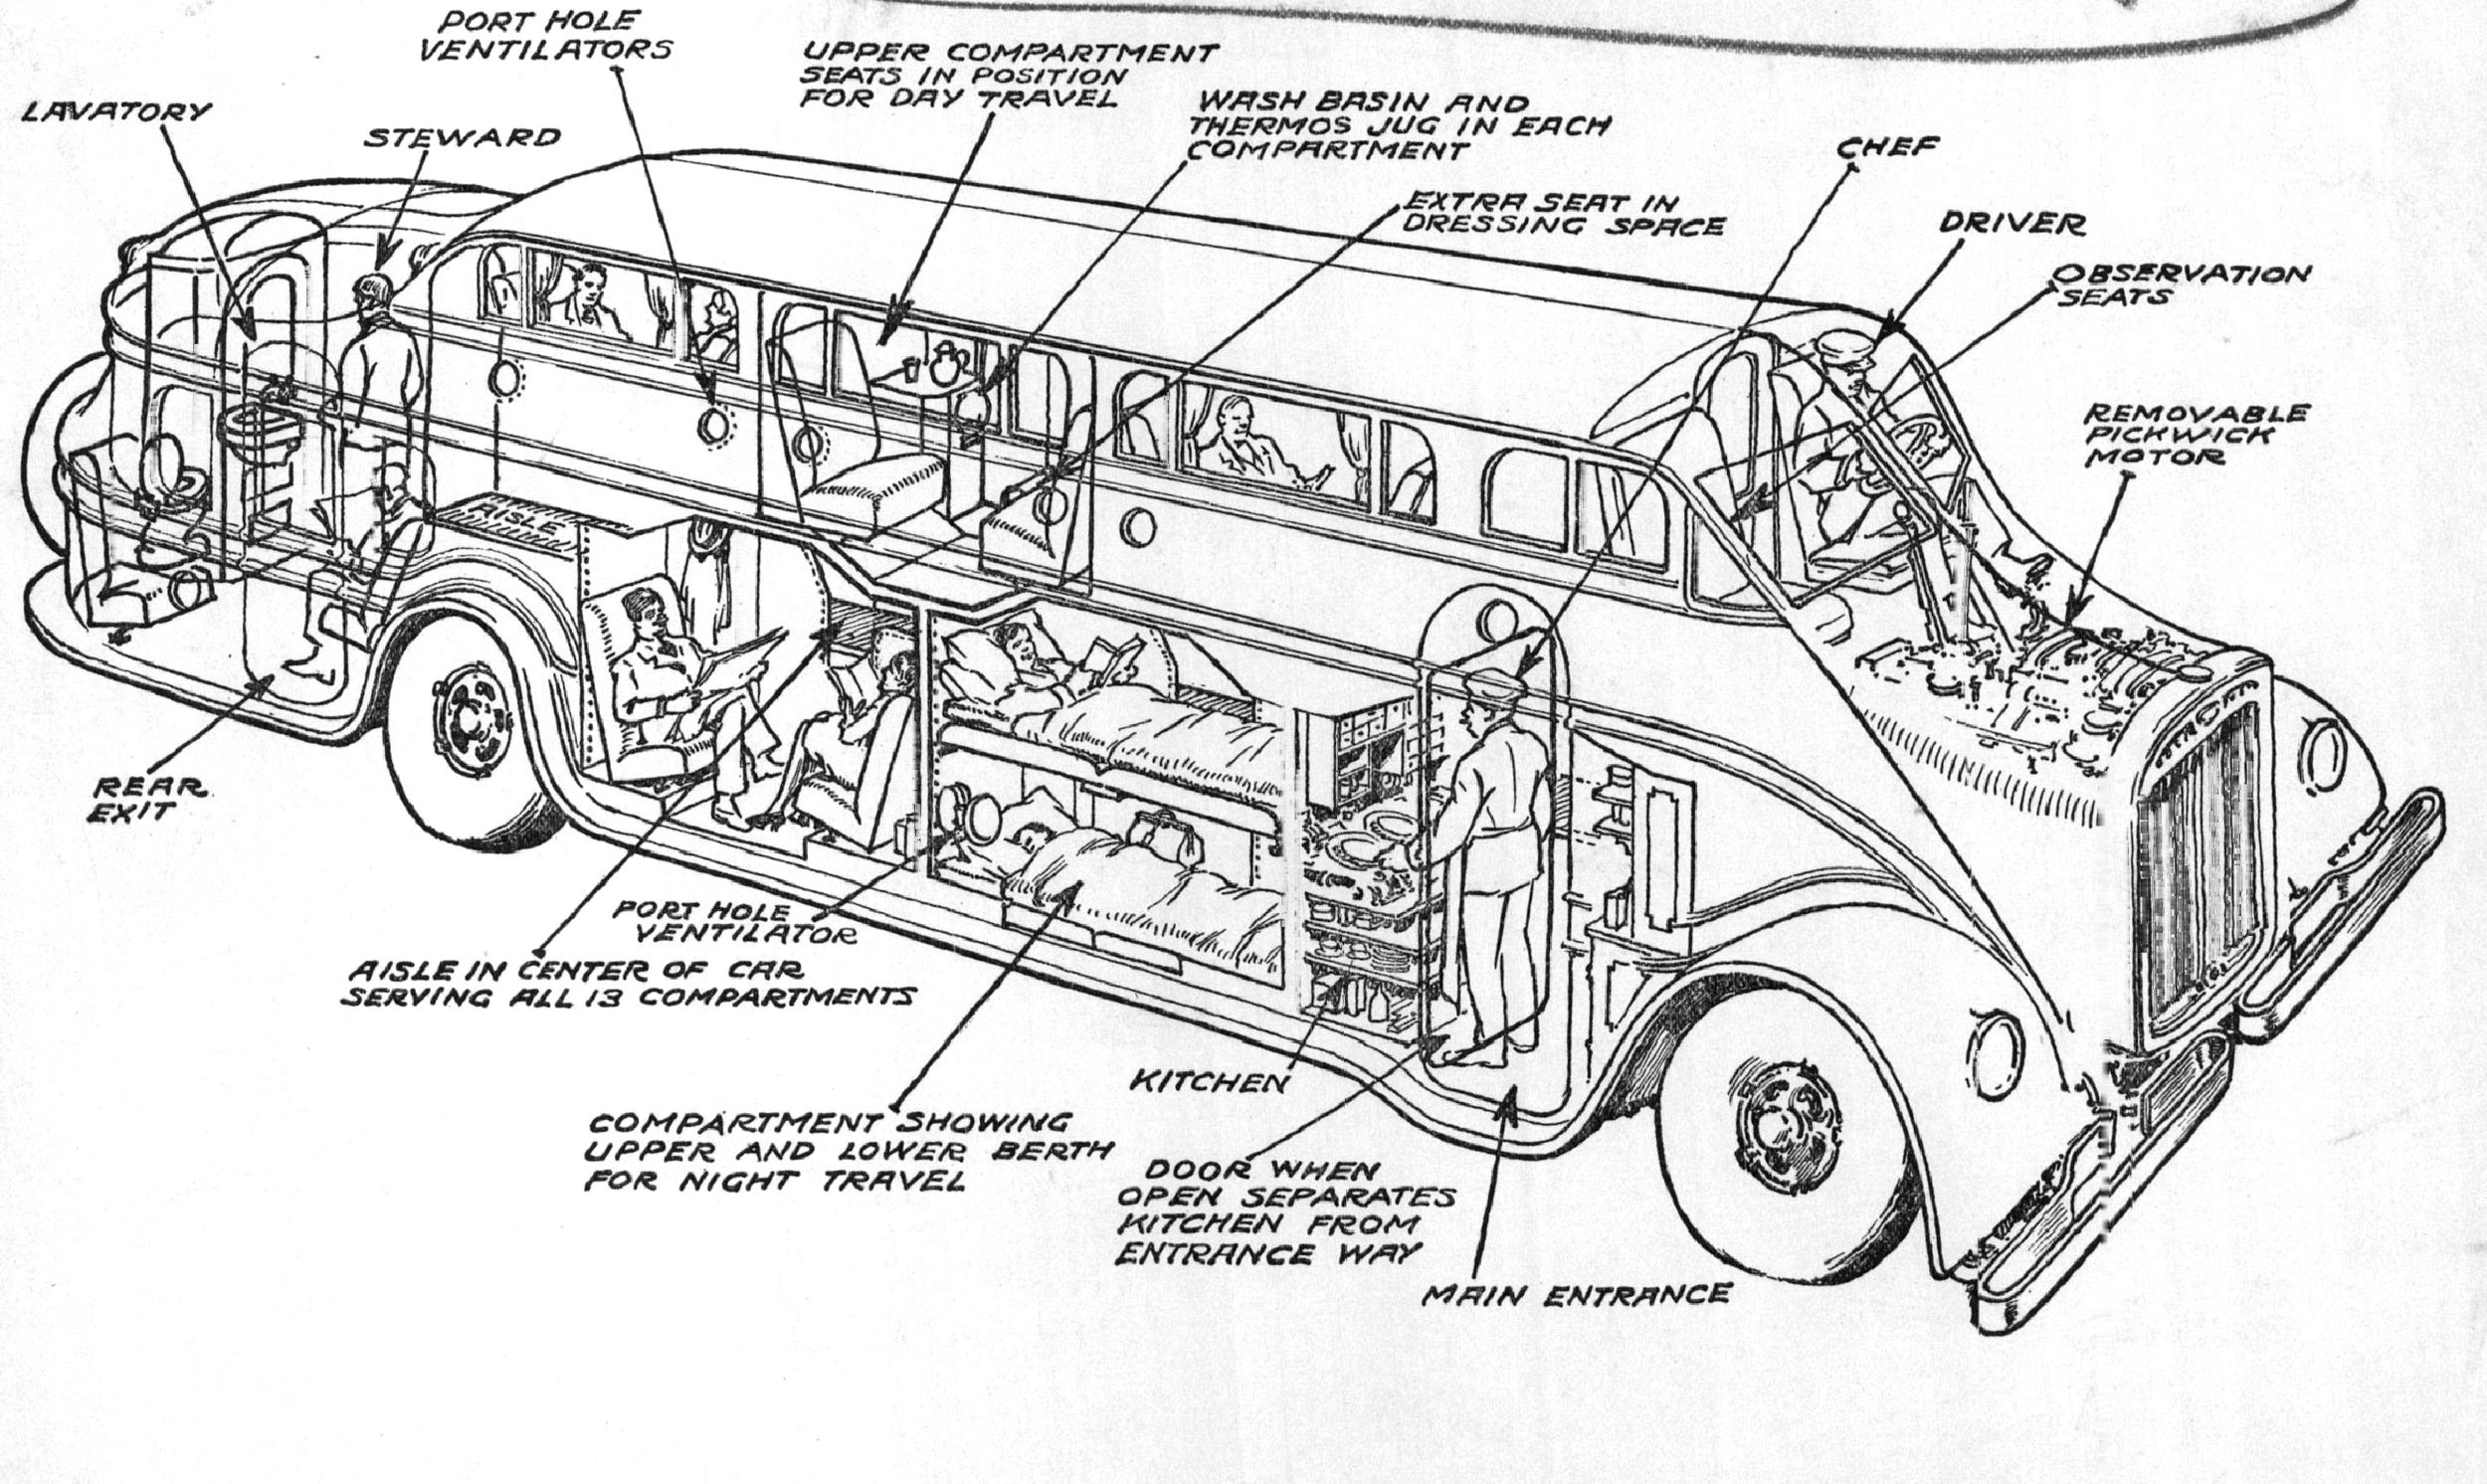 Diagram Of School Bus Engine File:pickwickcoach2.jpg – Wikimedia Commons Of Diagram Of School Bus Engine